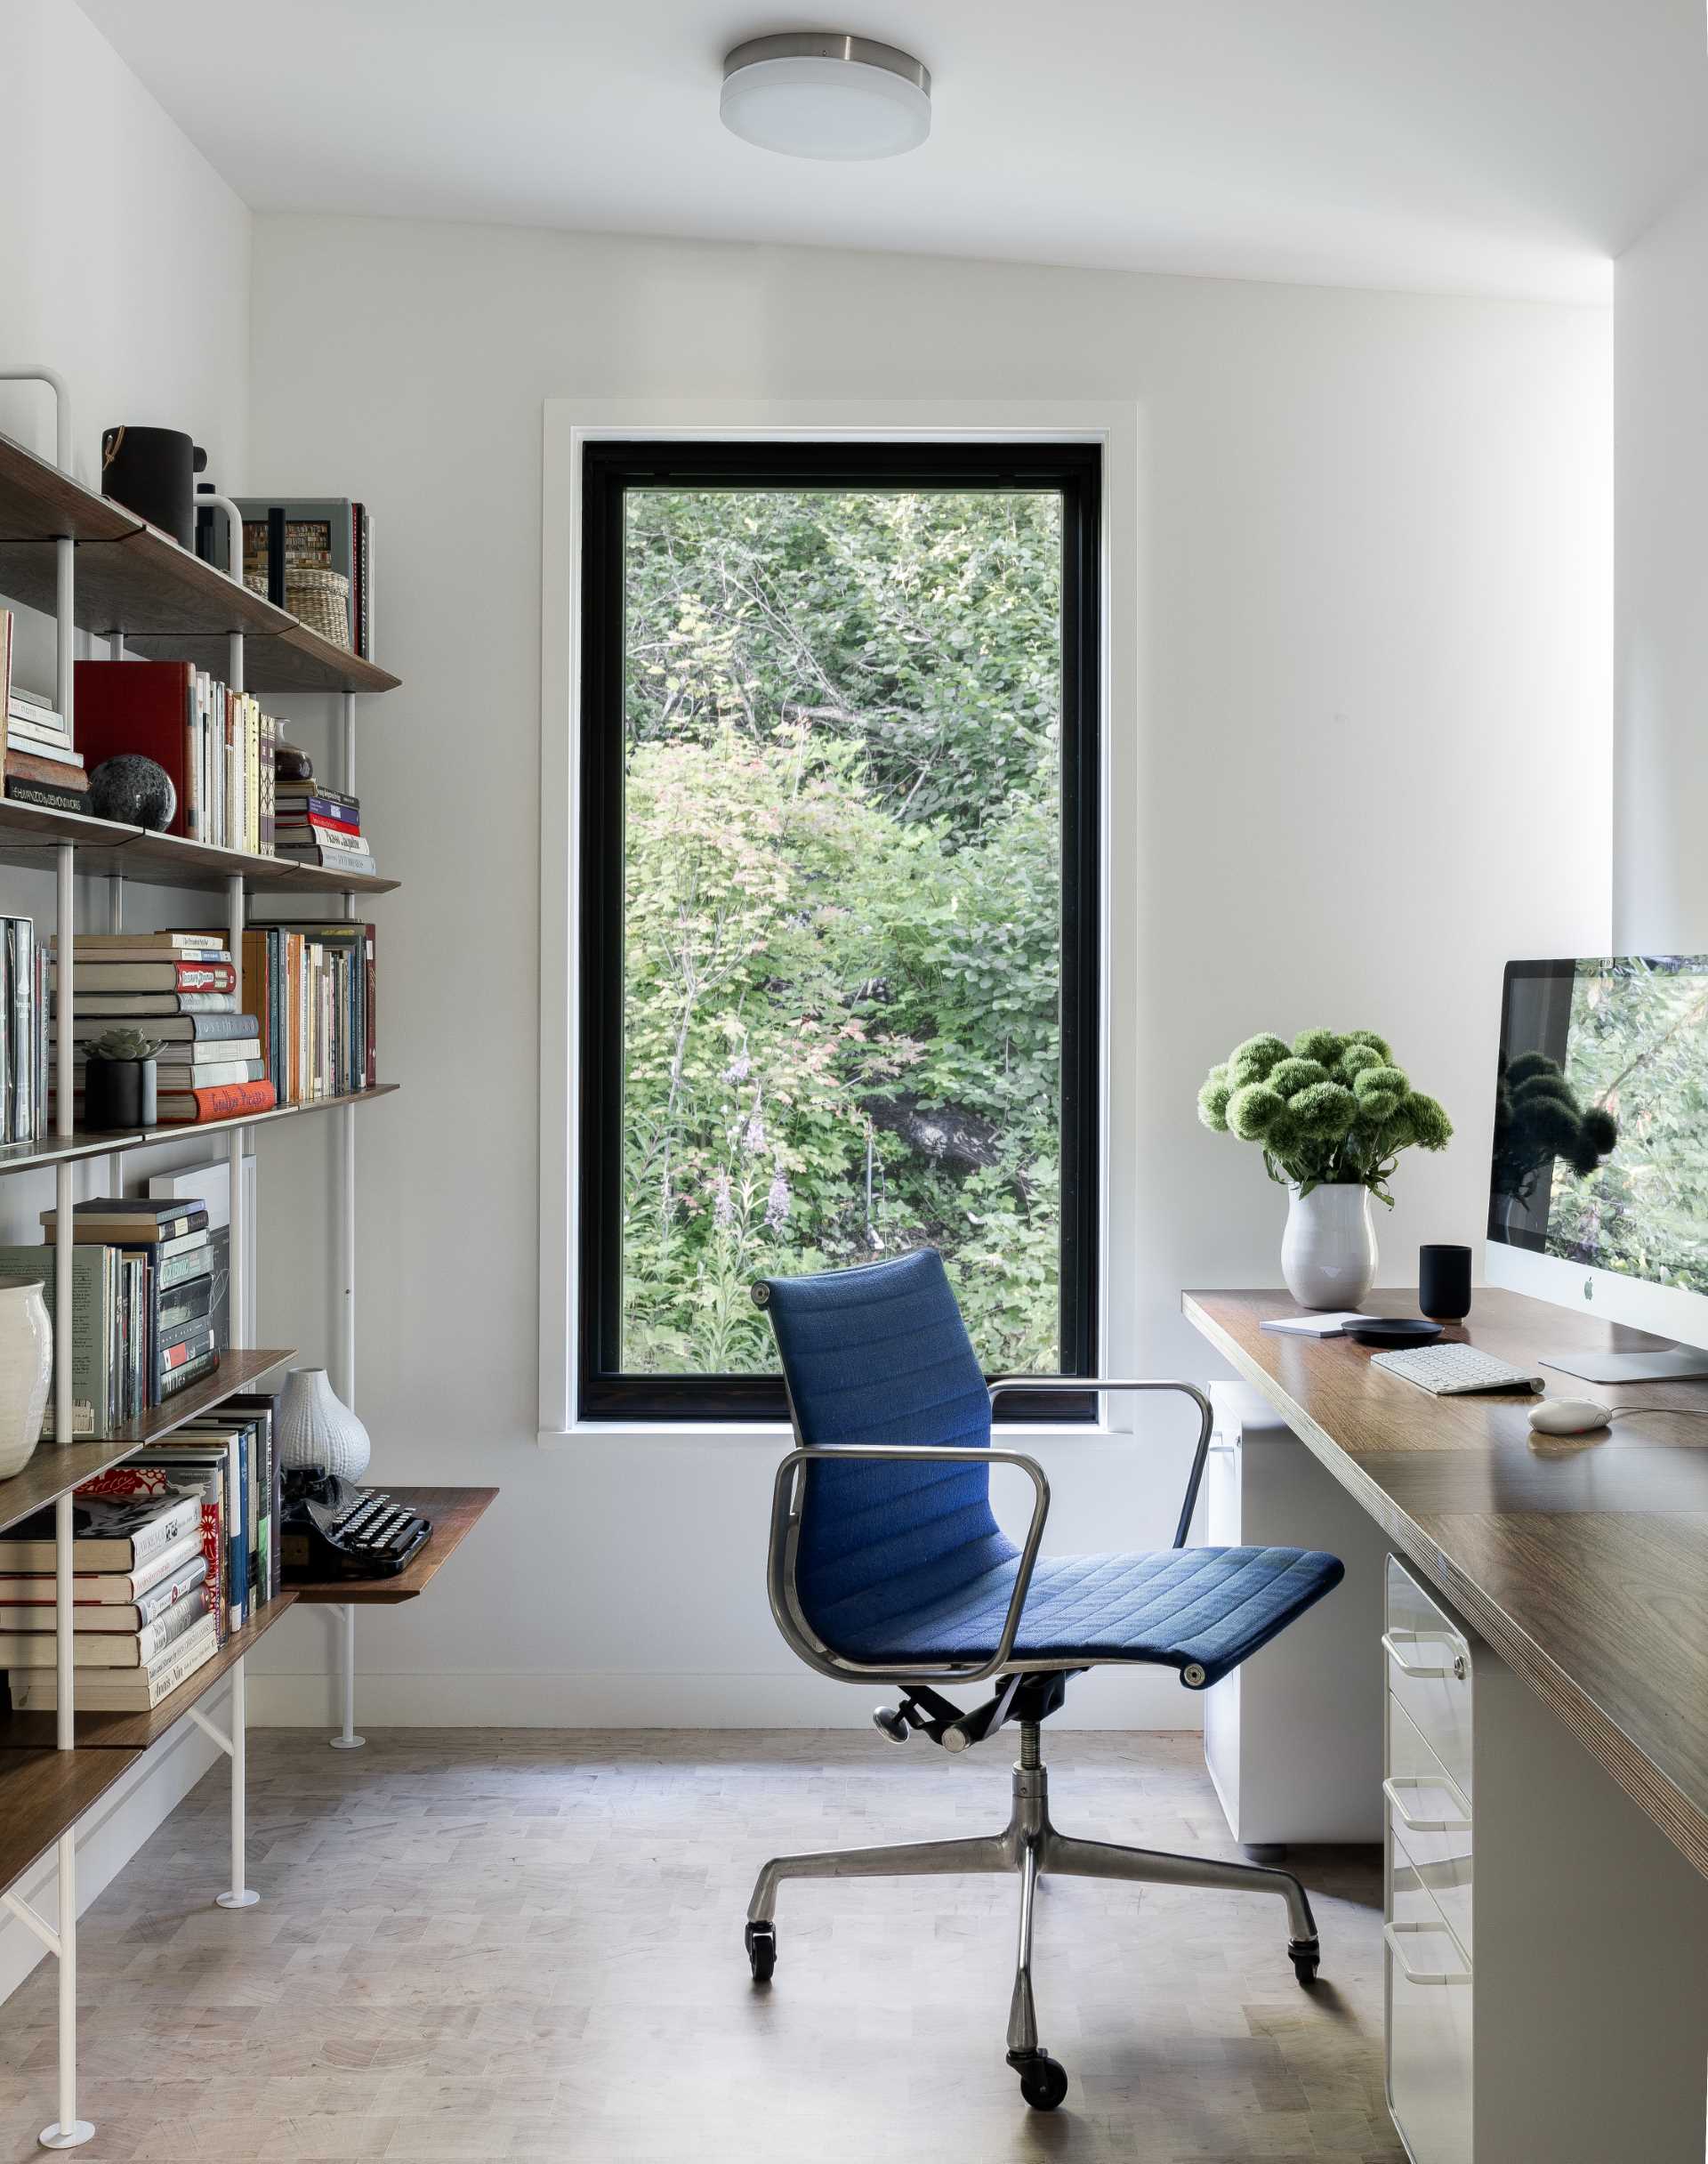 Домашний офис, оборудованный стеллажом и письменным столом, освещен естественным светом из вертикального окна.